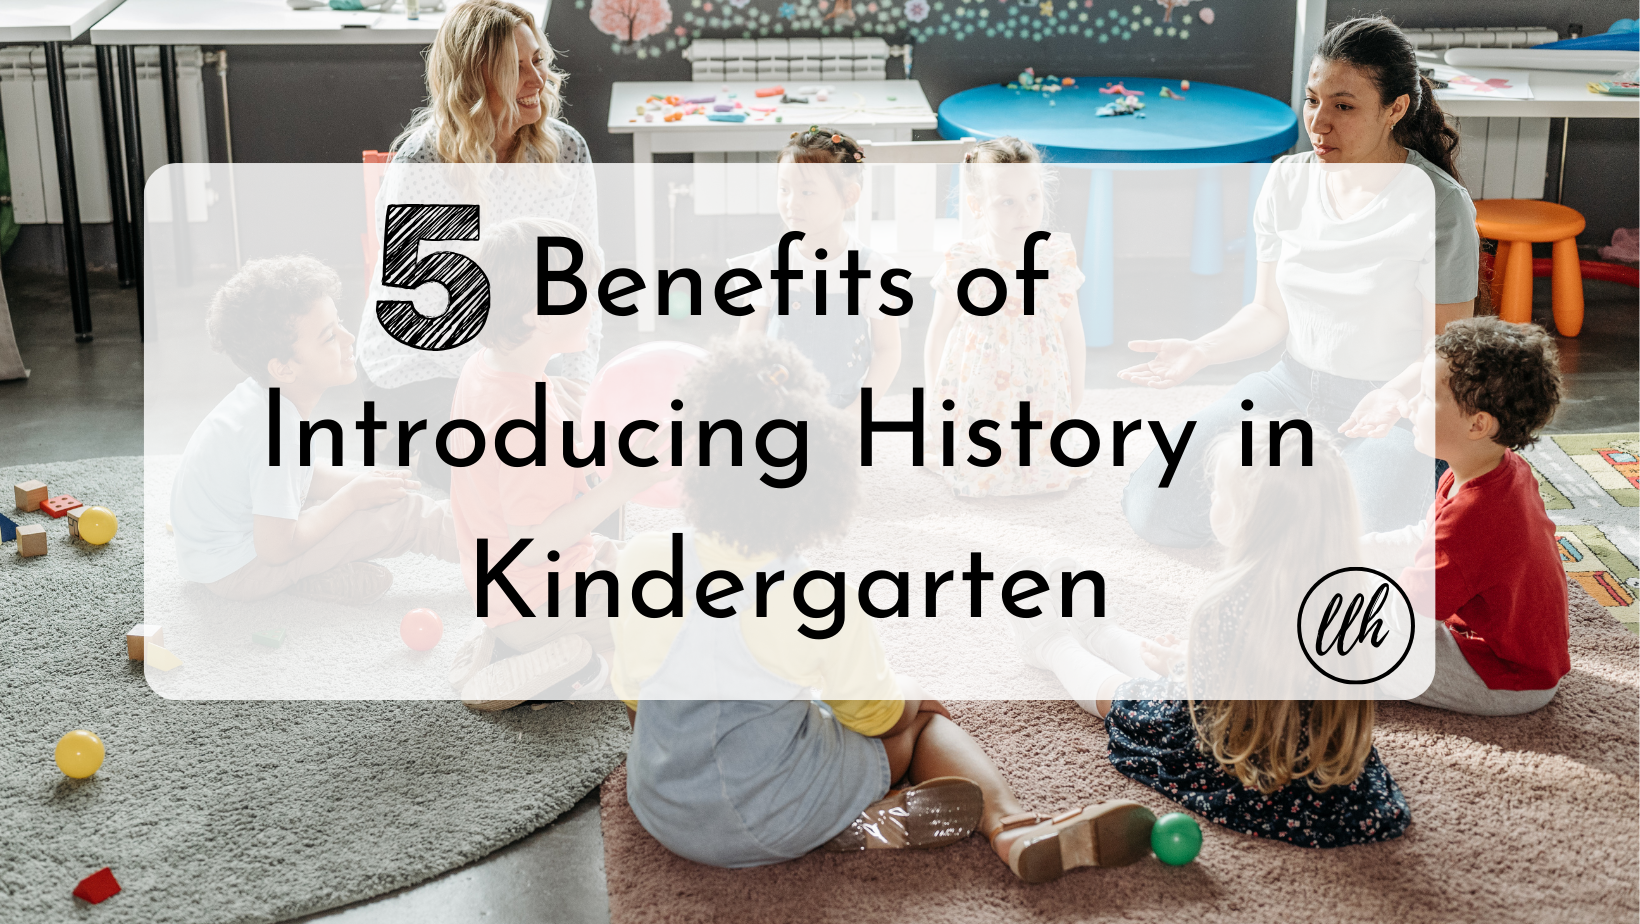 5 Benefits of Introducing History in Kindergarten